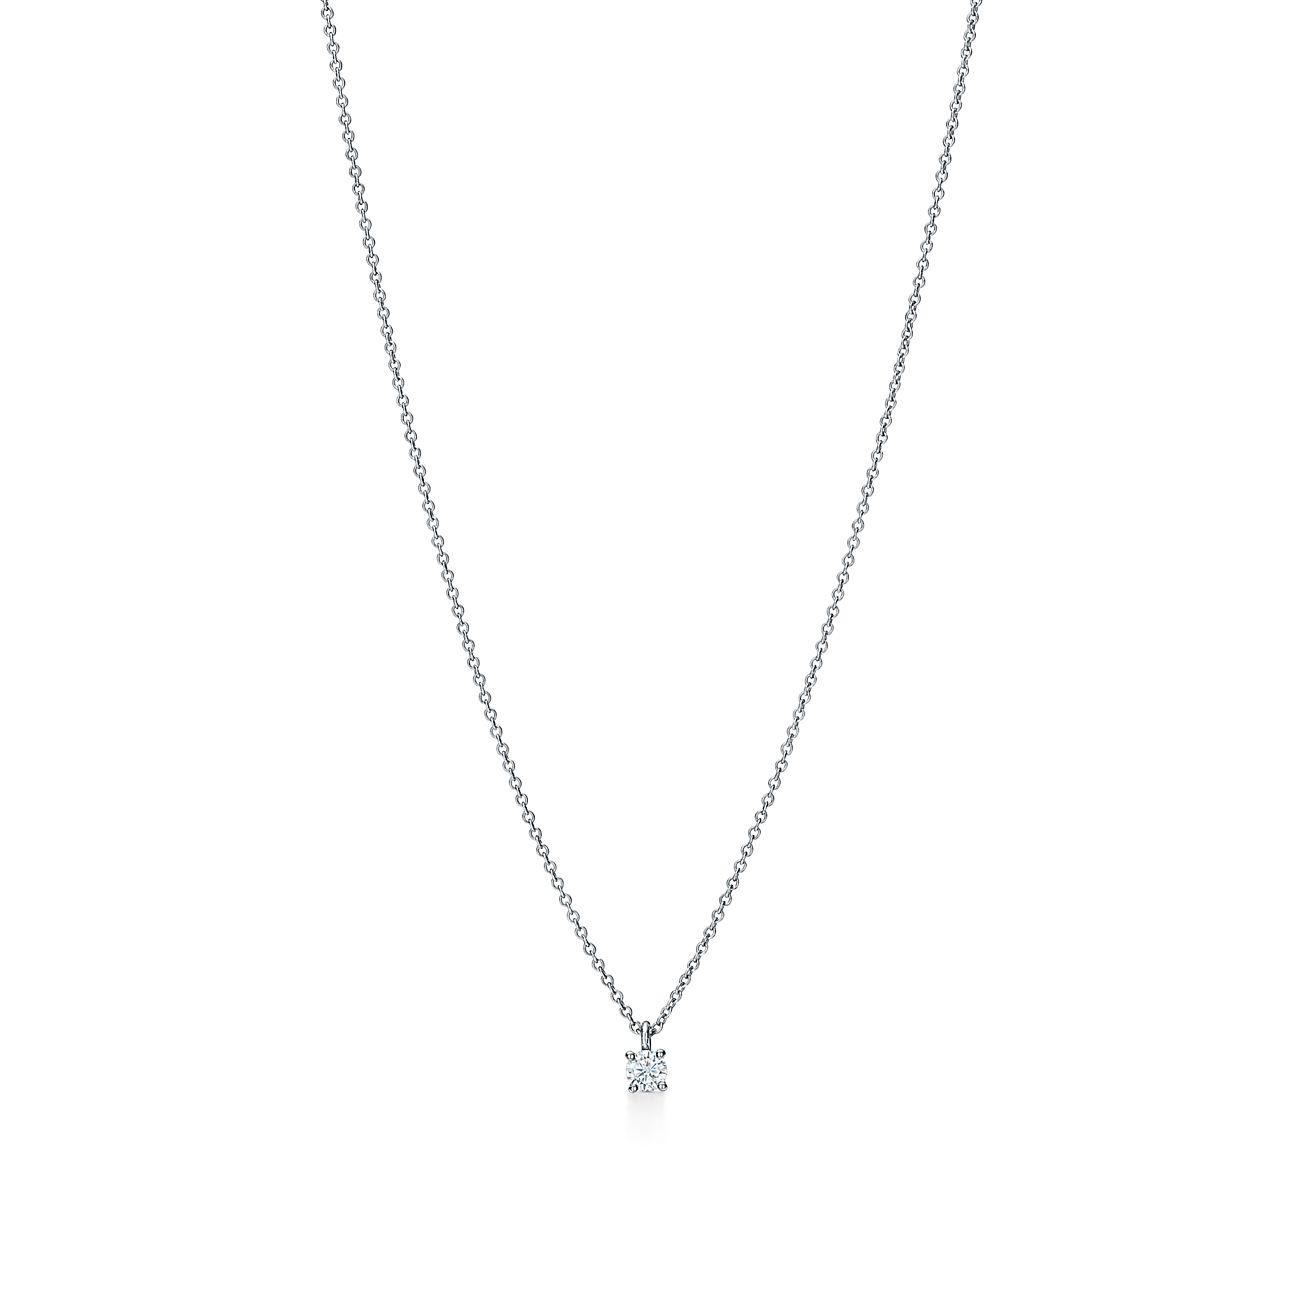 Tiffany solitaire diamond pendant in platinum. | Tiffany & Co.